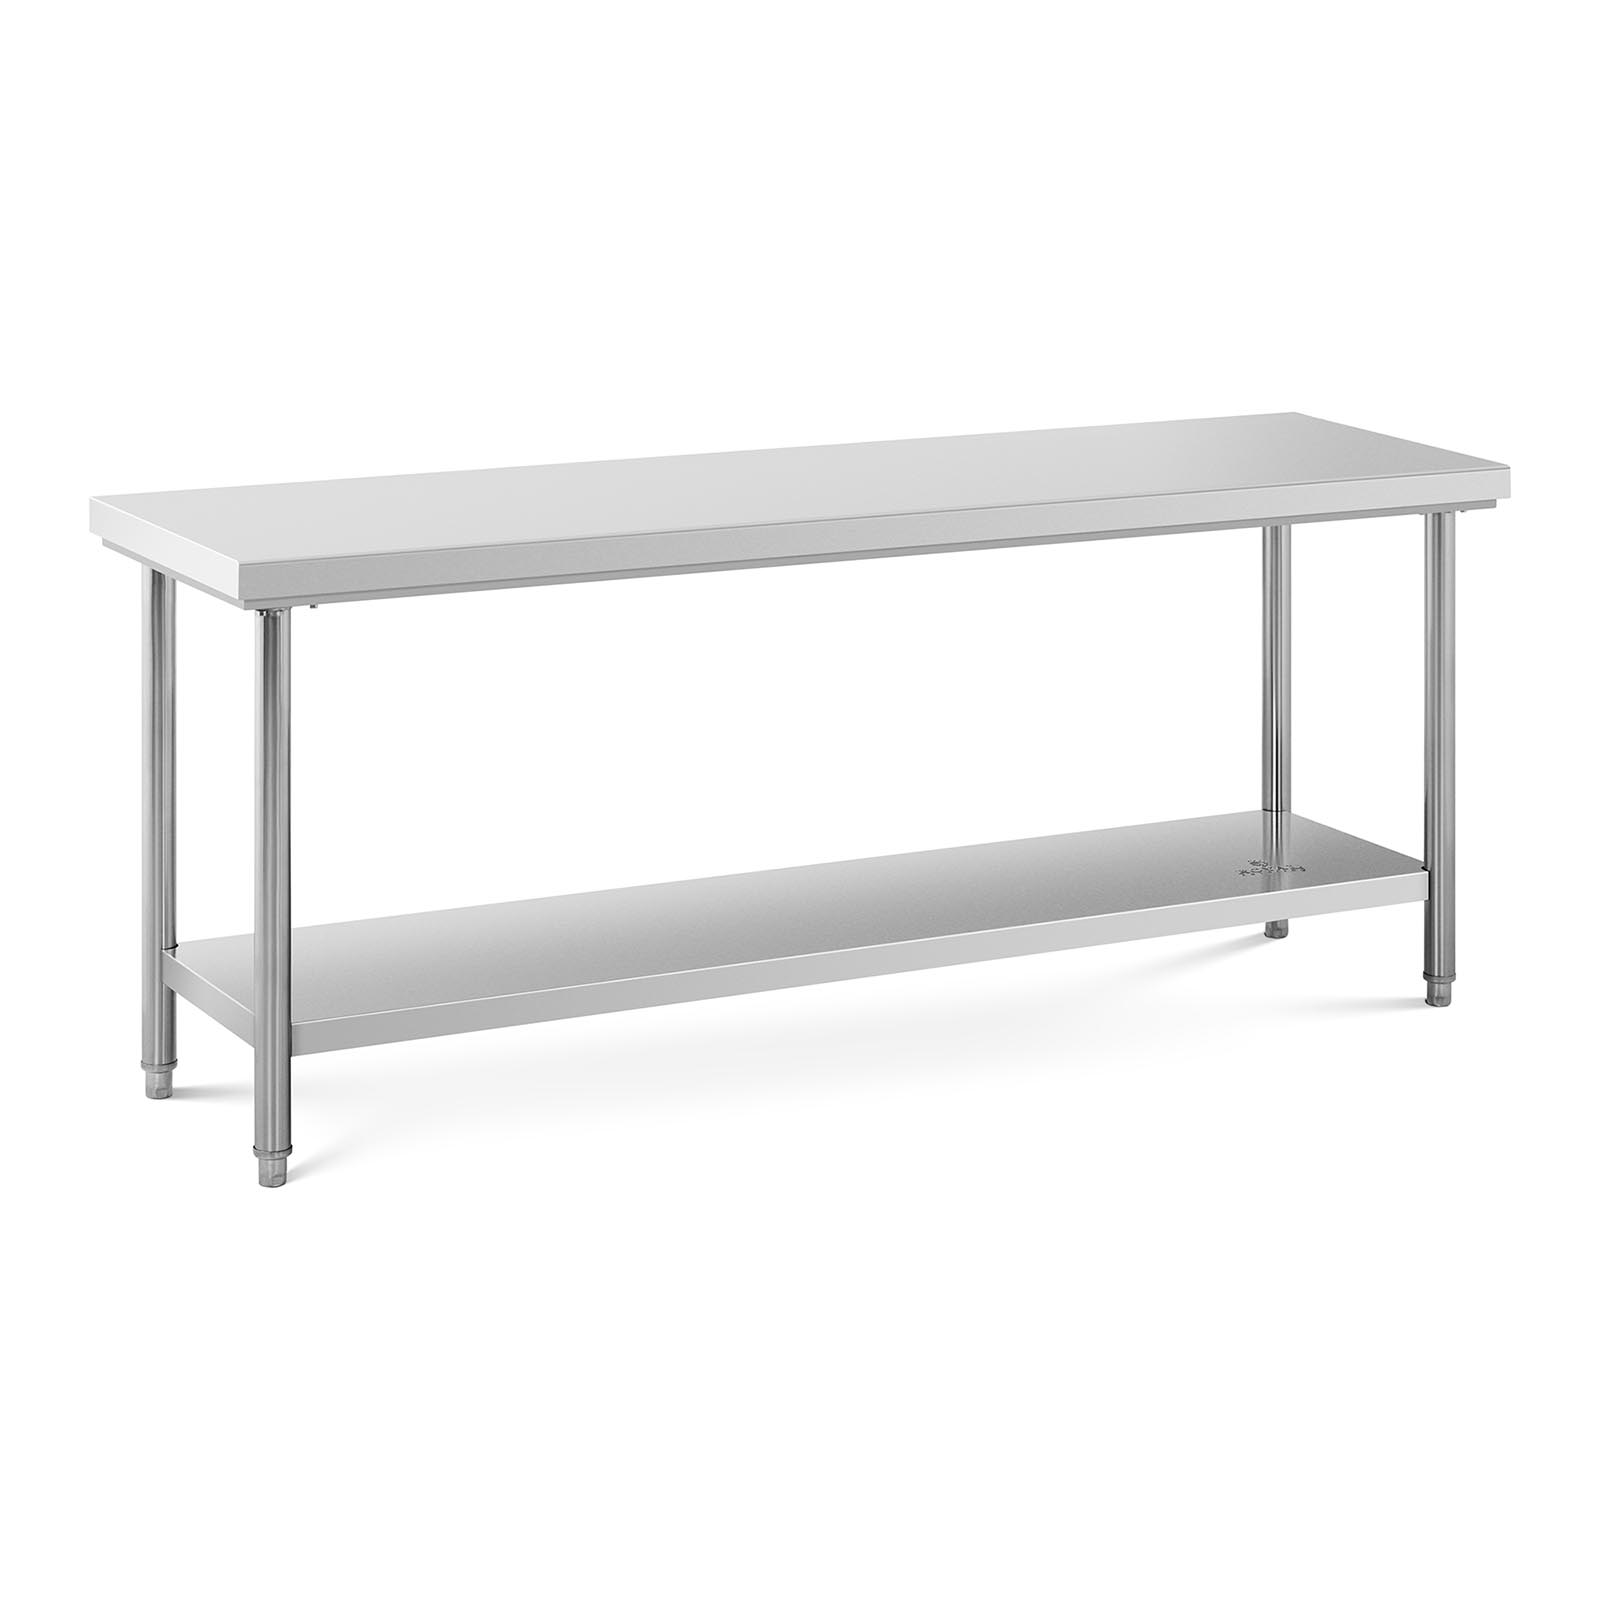 Radni stol od nehrđajućeg čelika - 200 x 60 cm - nosivost 195 kg - Royal Catering